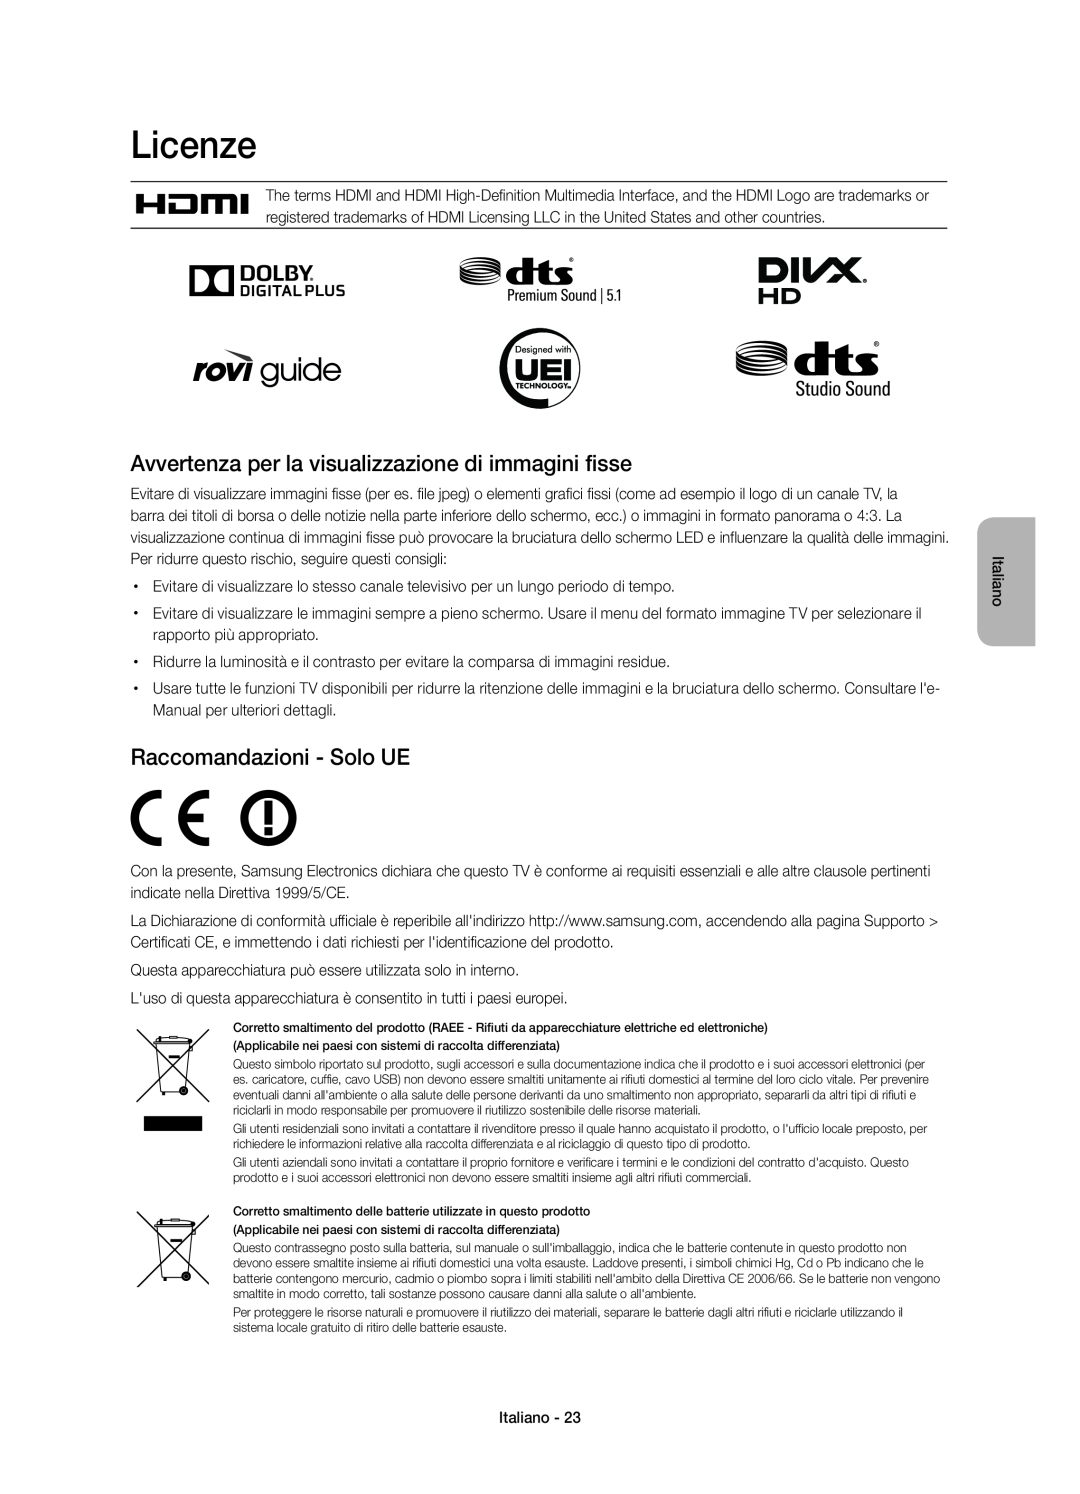 Samsung UE48H6750SVXZG manual Licenze, Avvertenza per la visualizzazione di immagini fisse, Raccomandazioni - Solo UE 